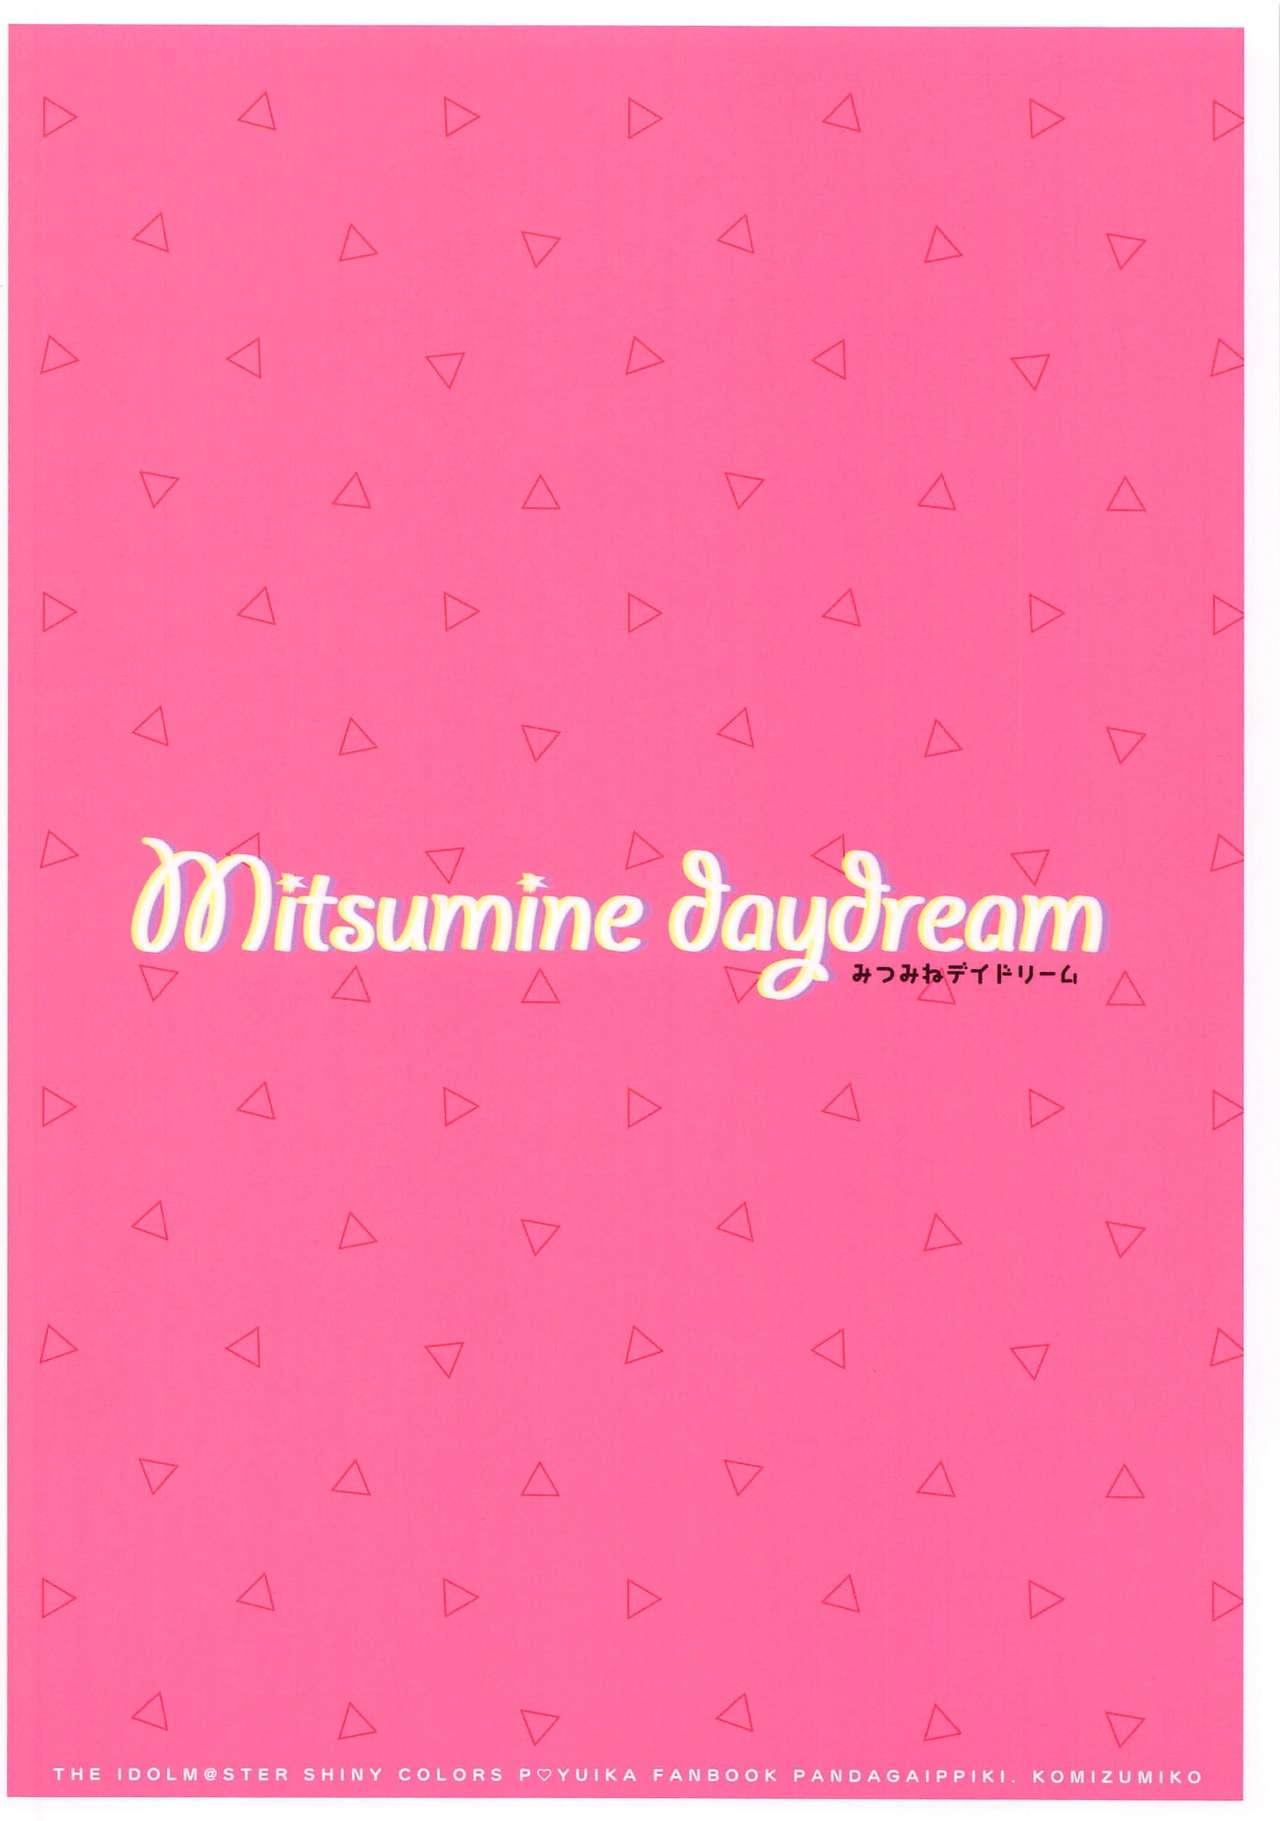 Mitsumine daydream 13